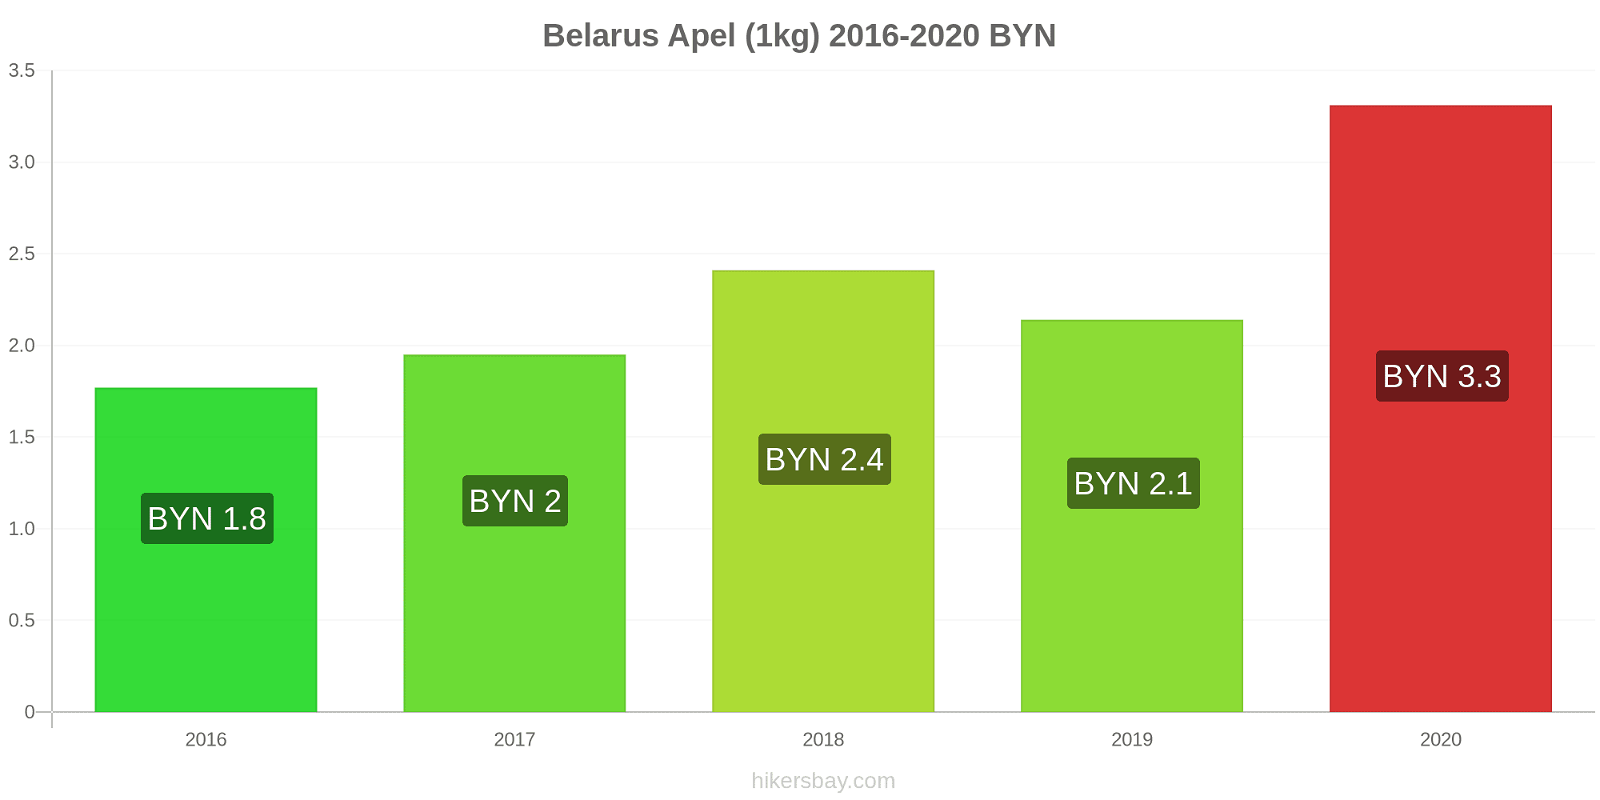 Belarus perubahan harga Apel (1kg) hikersbay.com